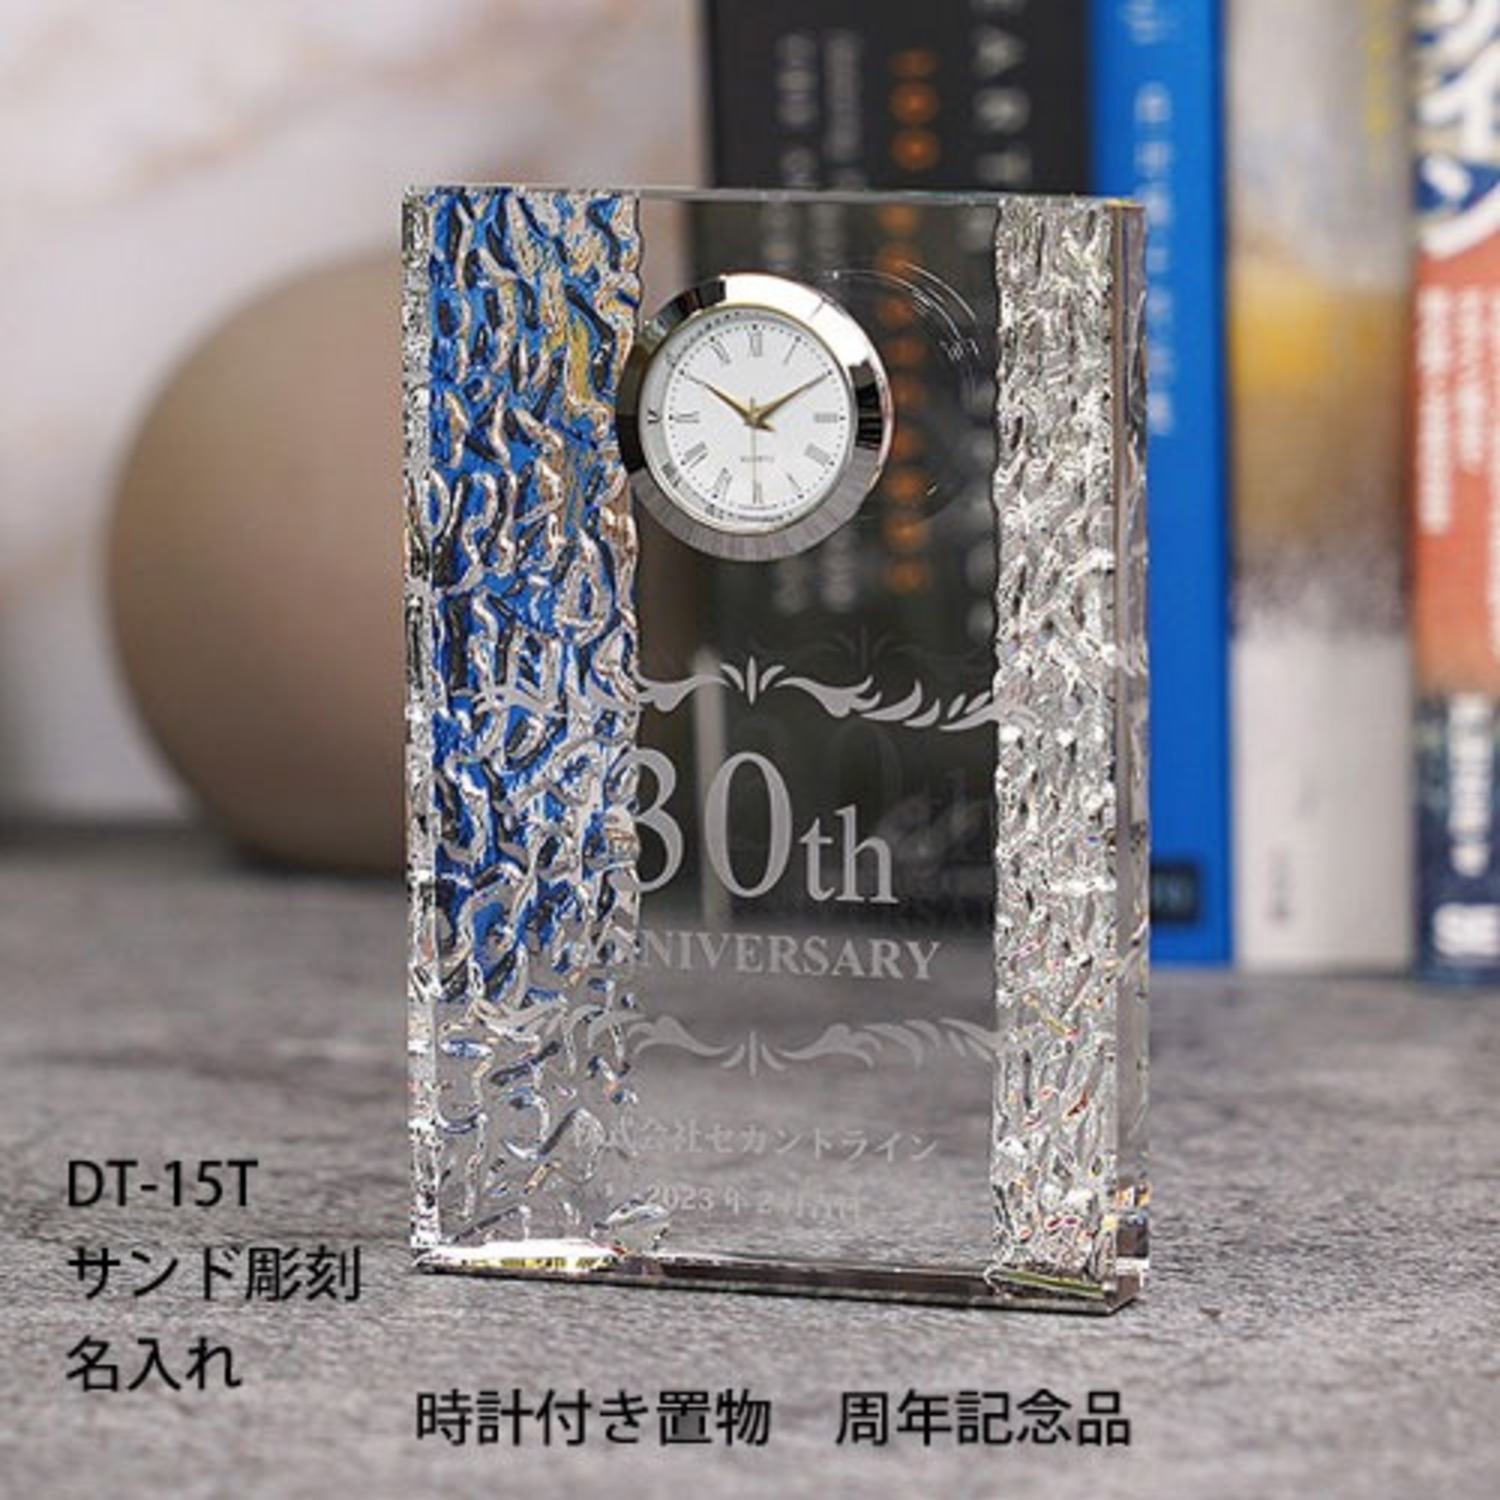 時計付き贈答品 DT-15T 周年記念 名入れ置き時計